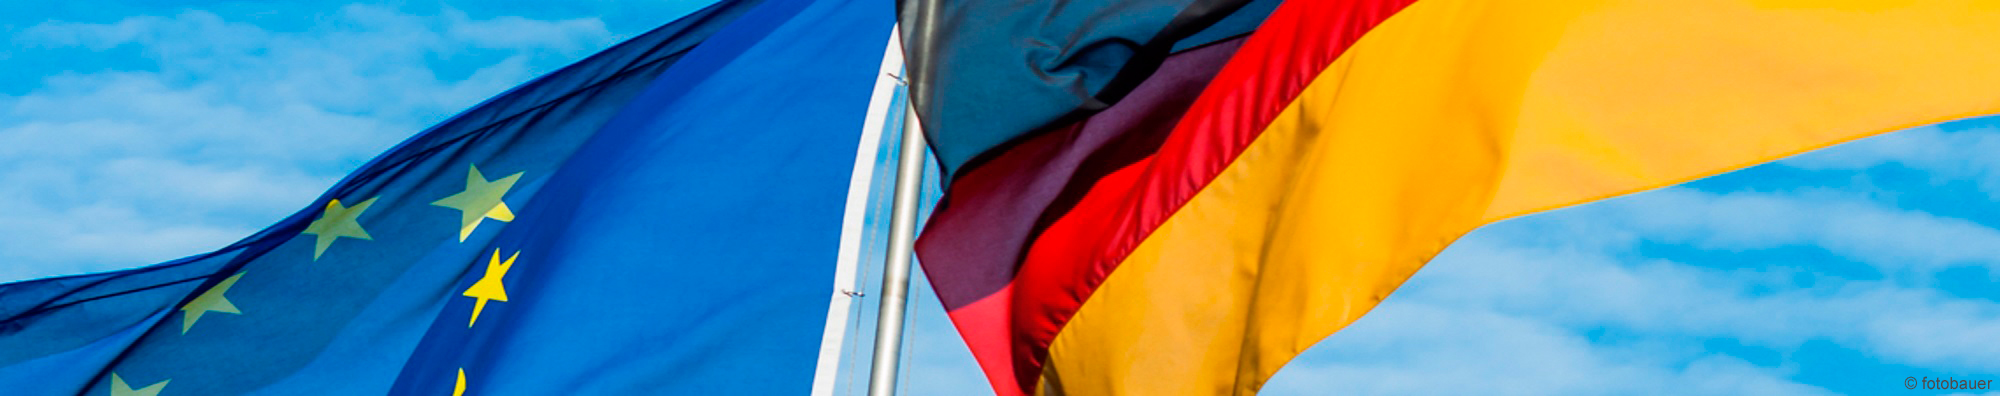 Deutschlandfahne und Europaflagge